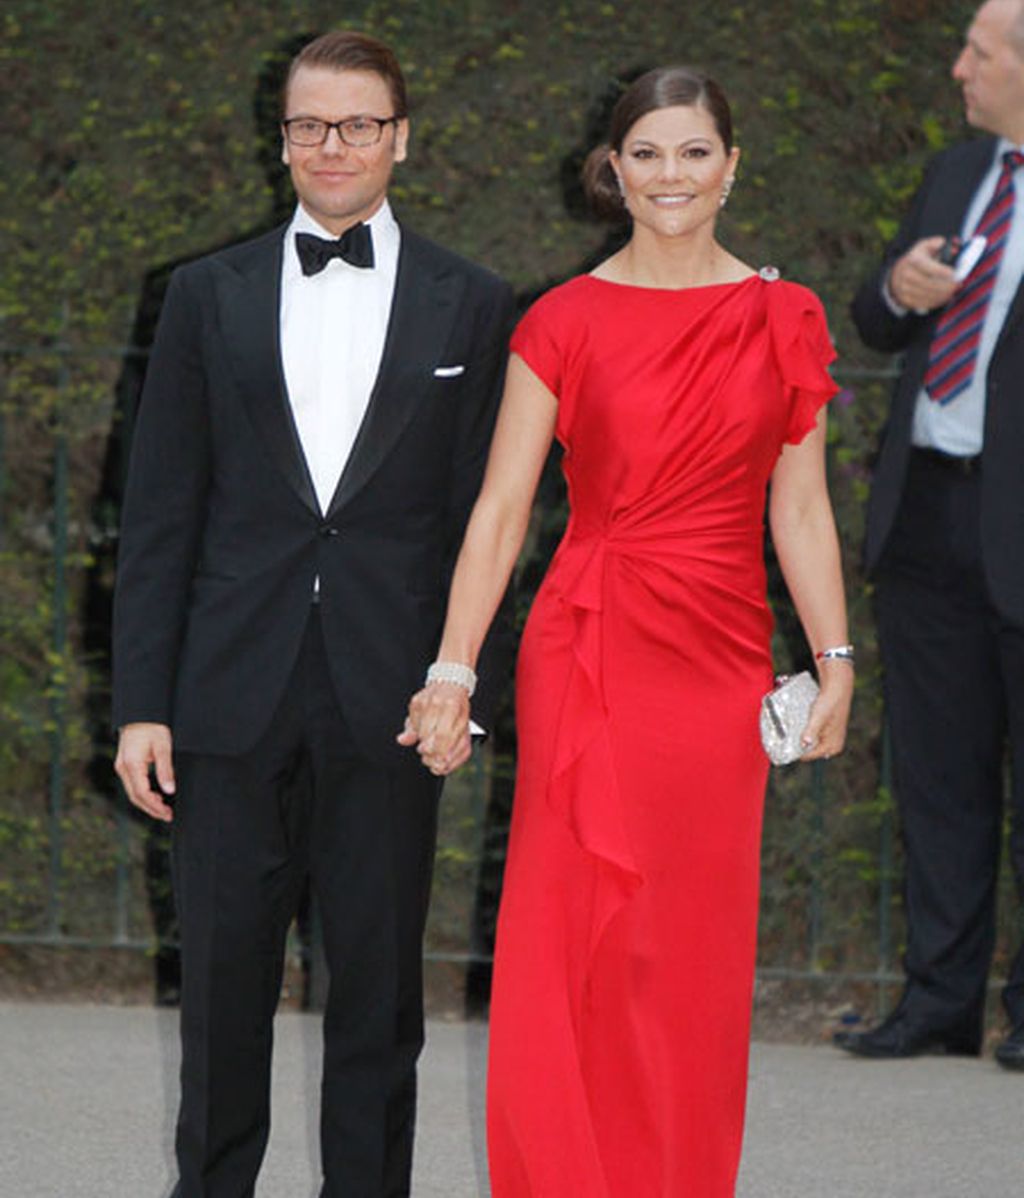 La cena de gala previa al enlace de Kate Middleton y el príncipe Guillermo